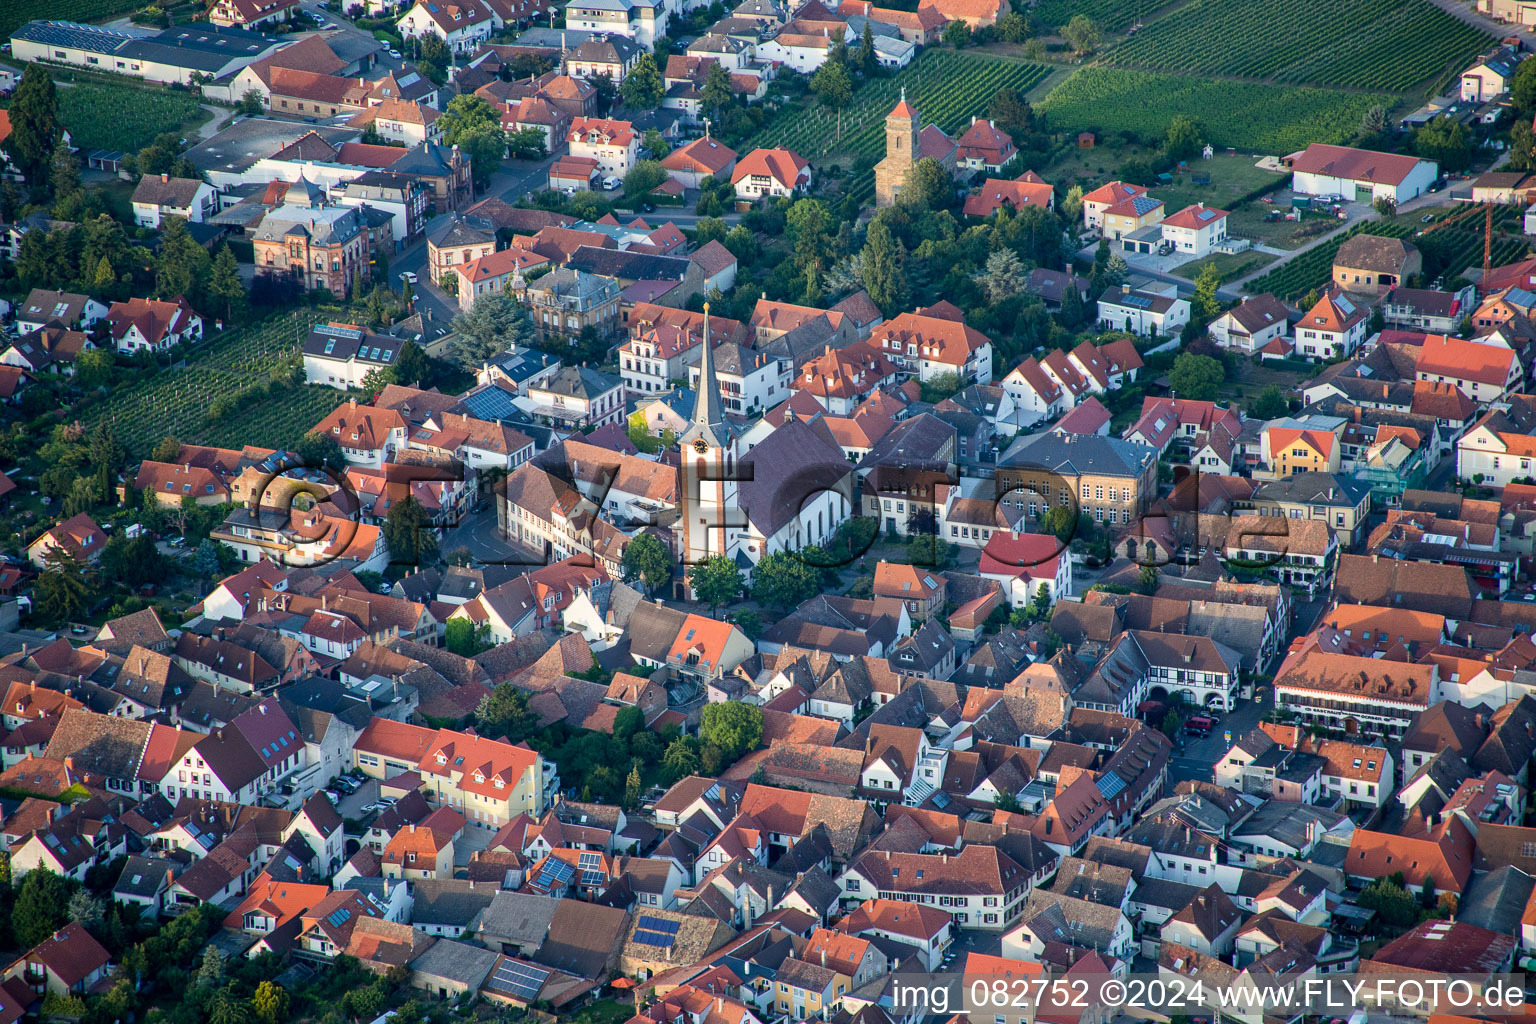 Vue aérienne de Bâtiment d'église au centre du village à Maikammer dans le département Rhénanie-Palatinat, Allemagne